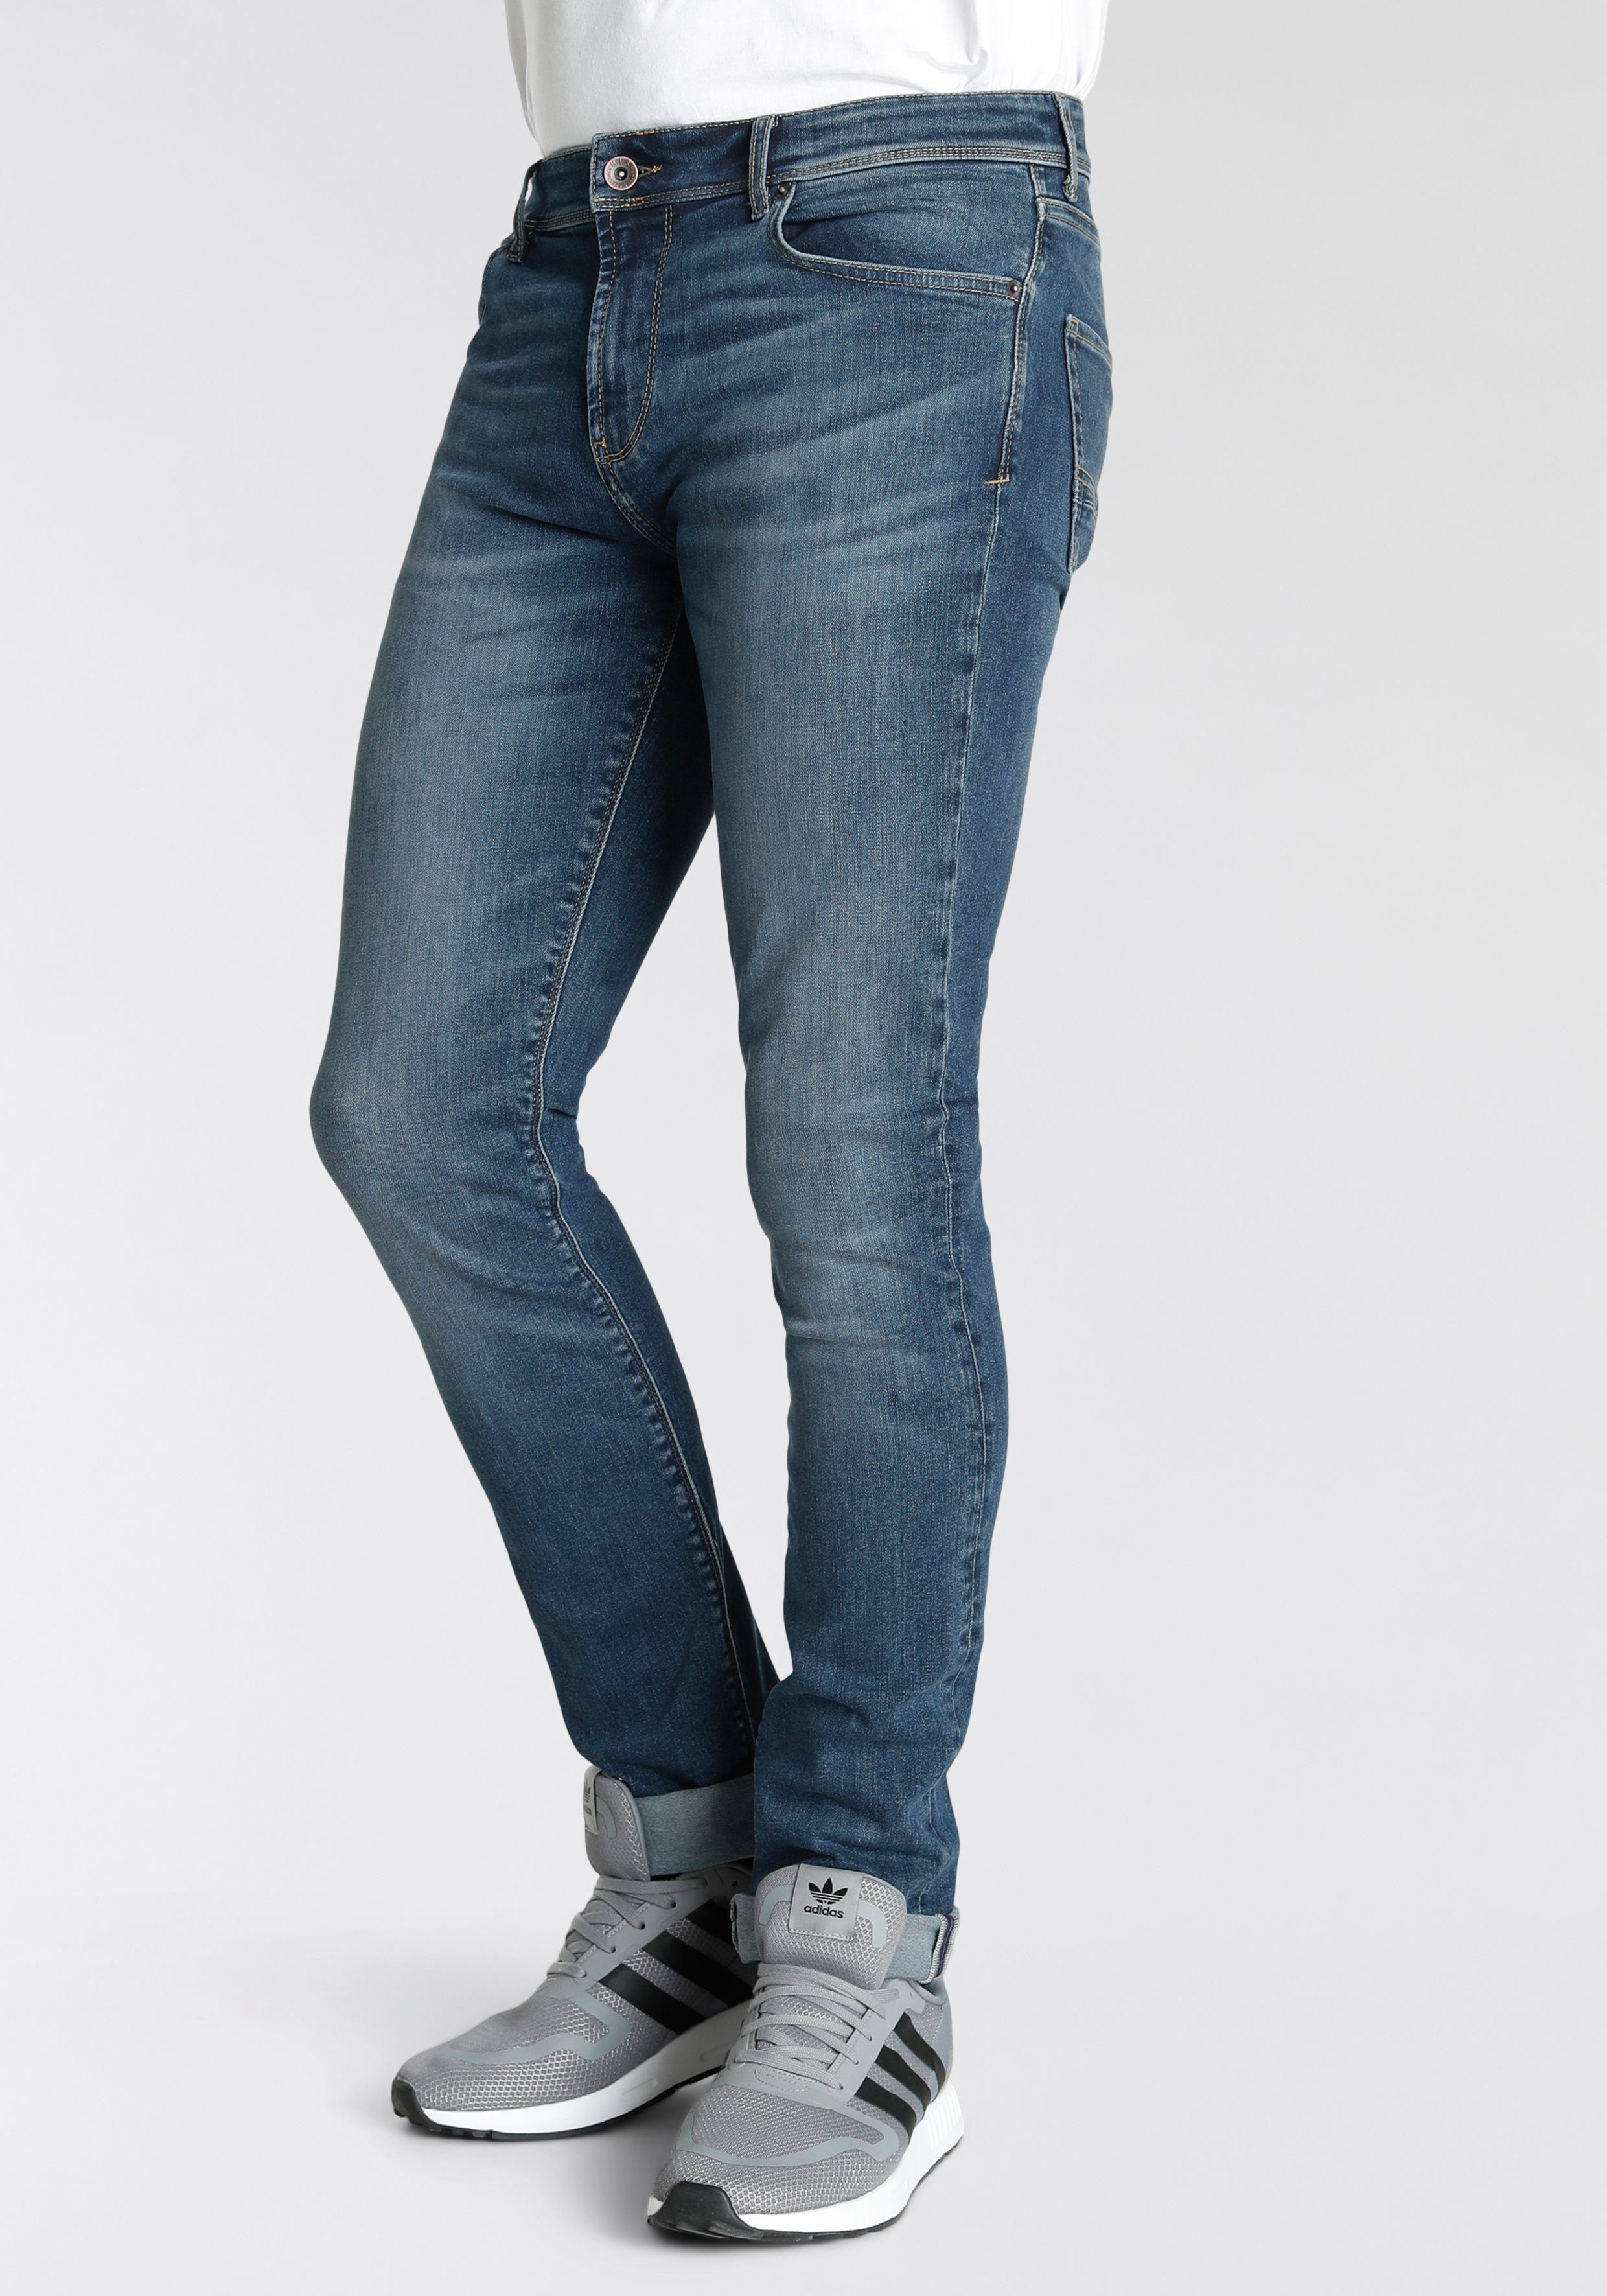 H.I.S Straight-Jeans Boyd Ökologische, wassersparende Produktion durch Ozon Wash dunkel blau